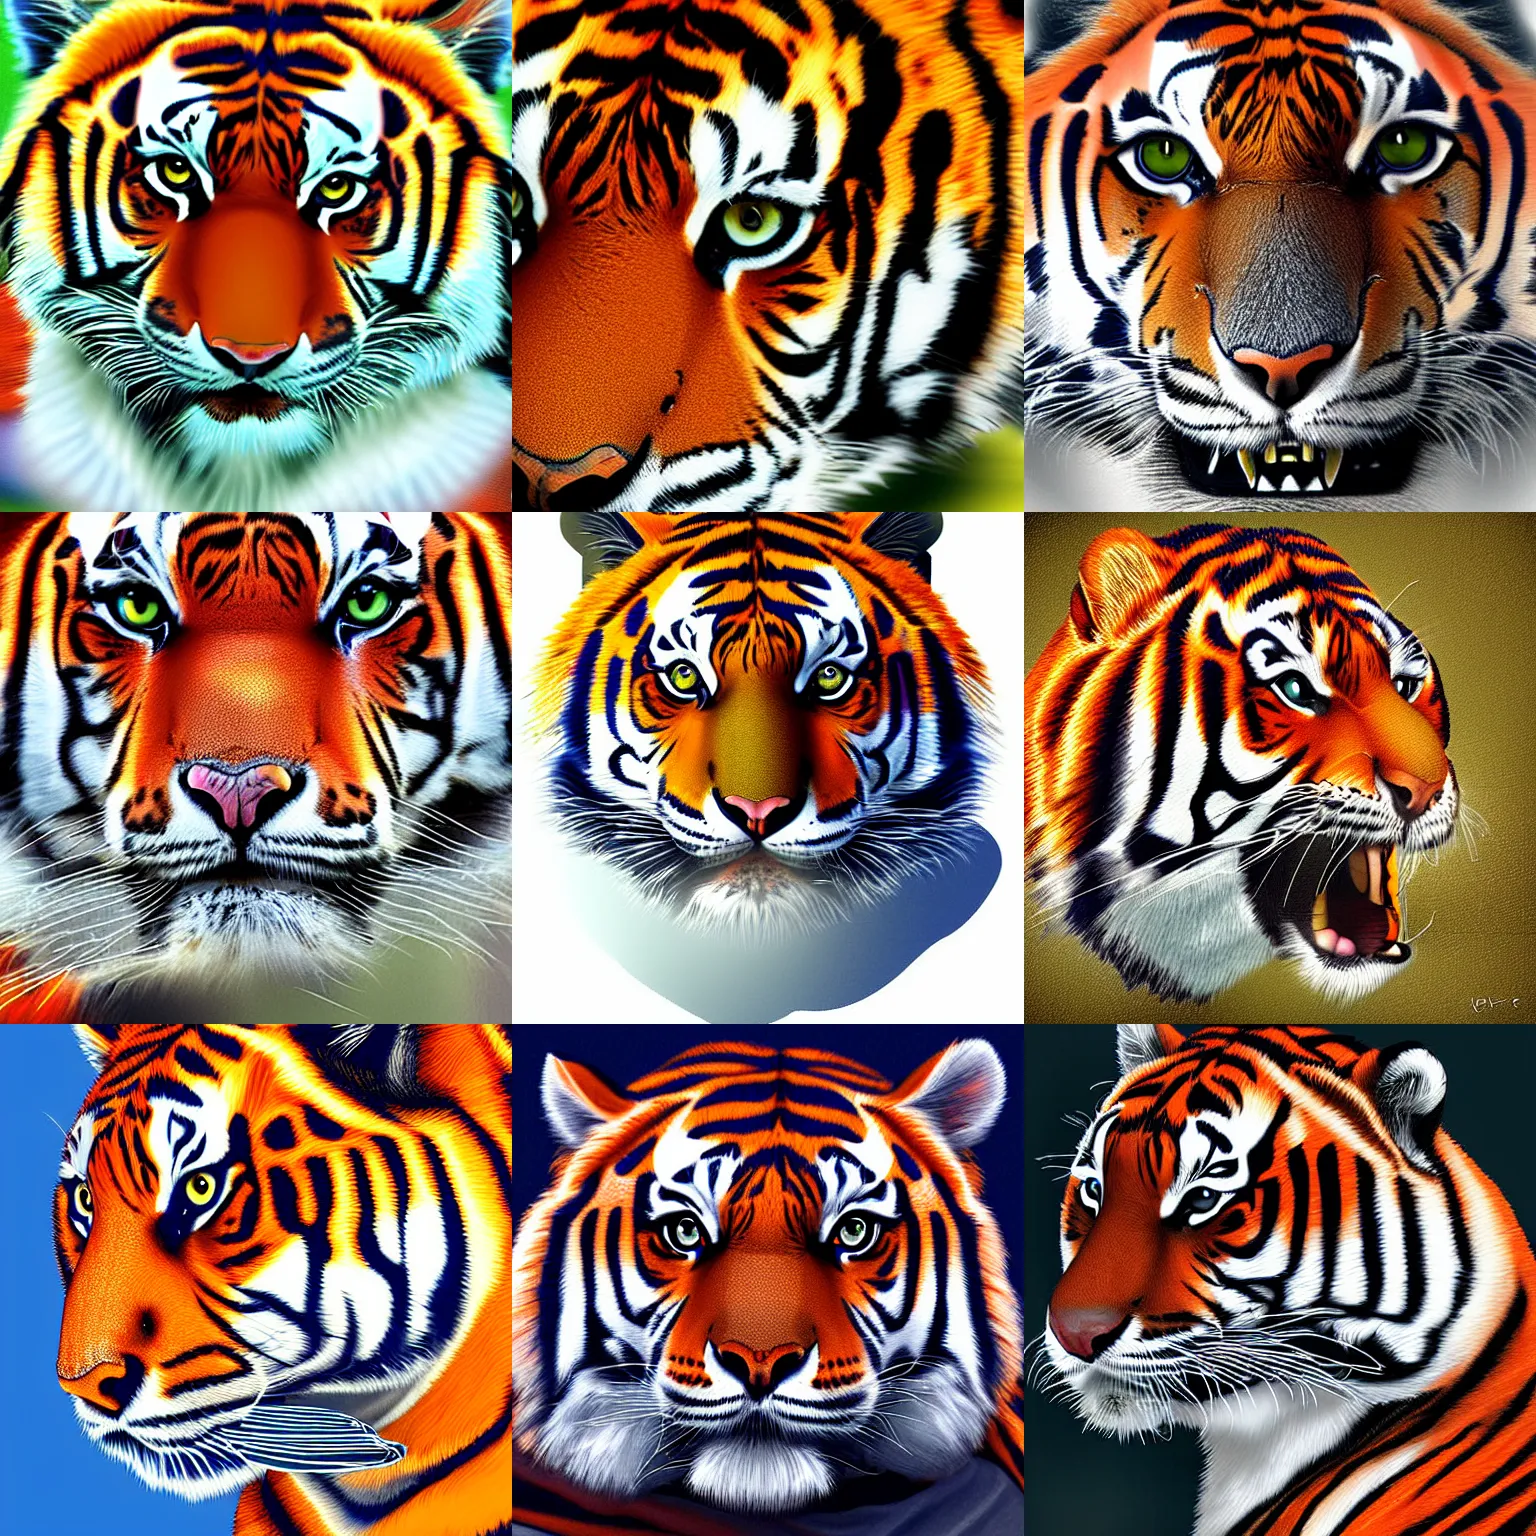 Prompt: auburn tiger, digital art